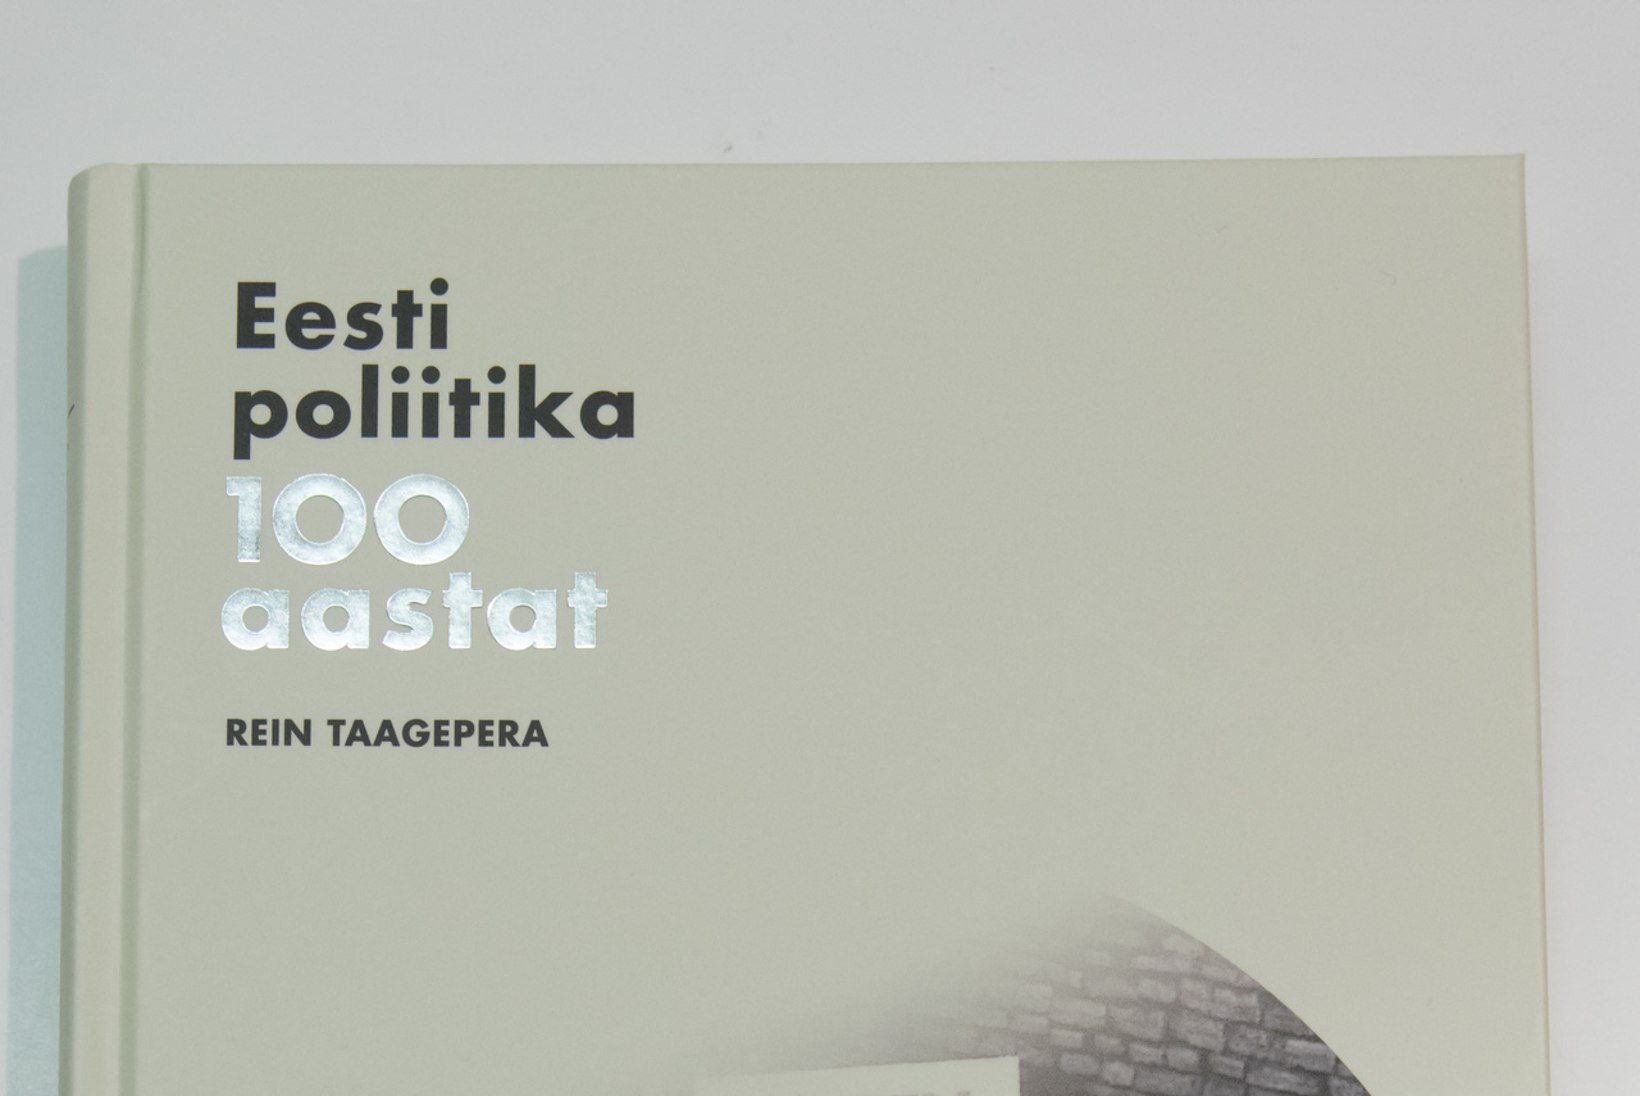 Raamat nagu autor: Rein Taagepera pani Eesti ajaloole juurde oma mõtted